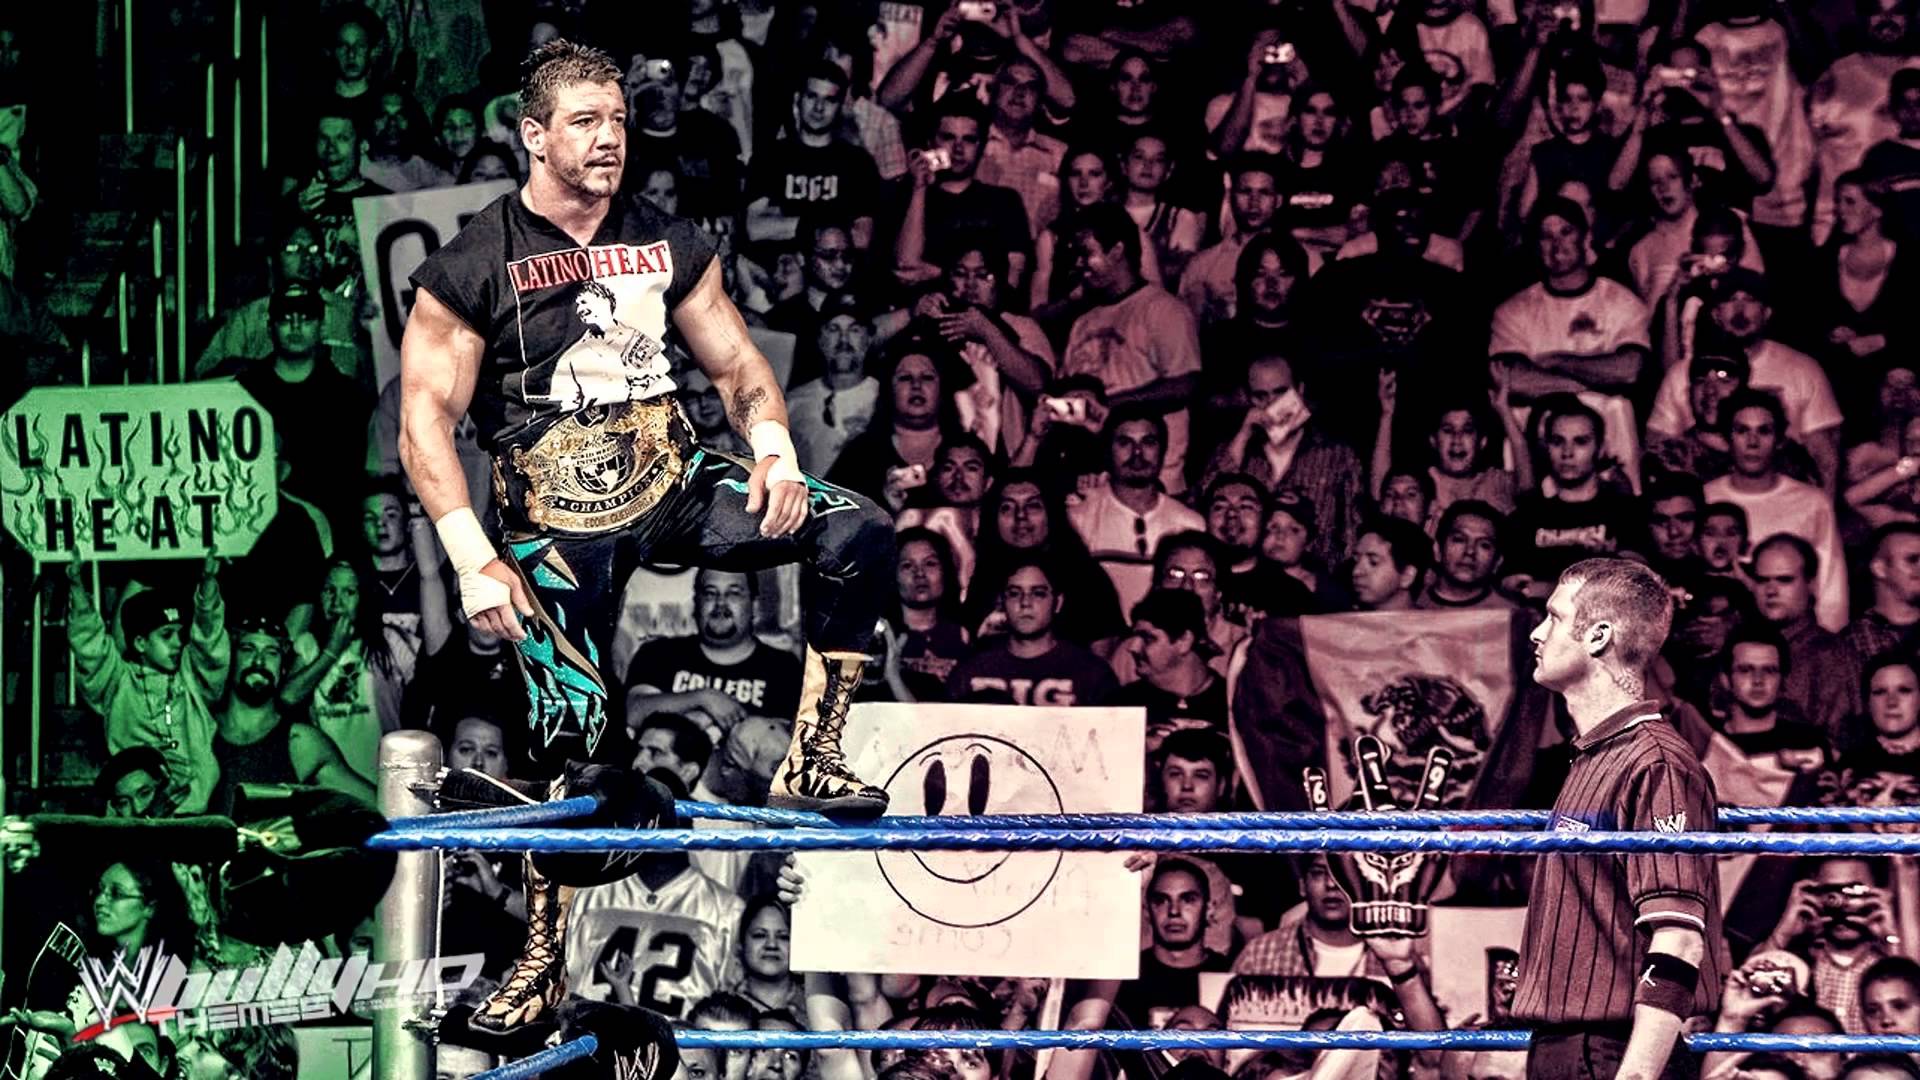 Eddie Guerrero brought 'Latino Heat' to wrestling ring | Fox News